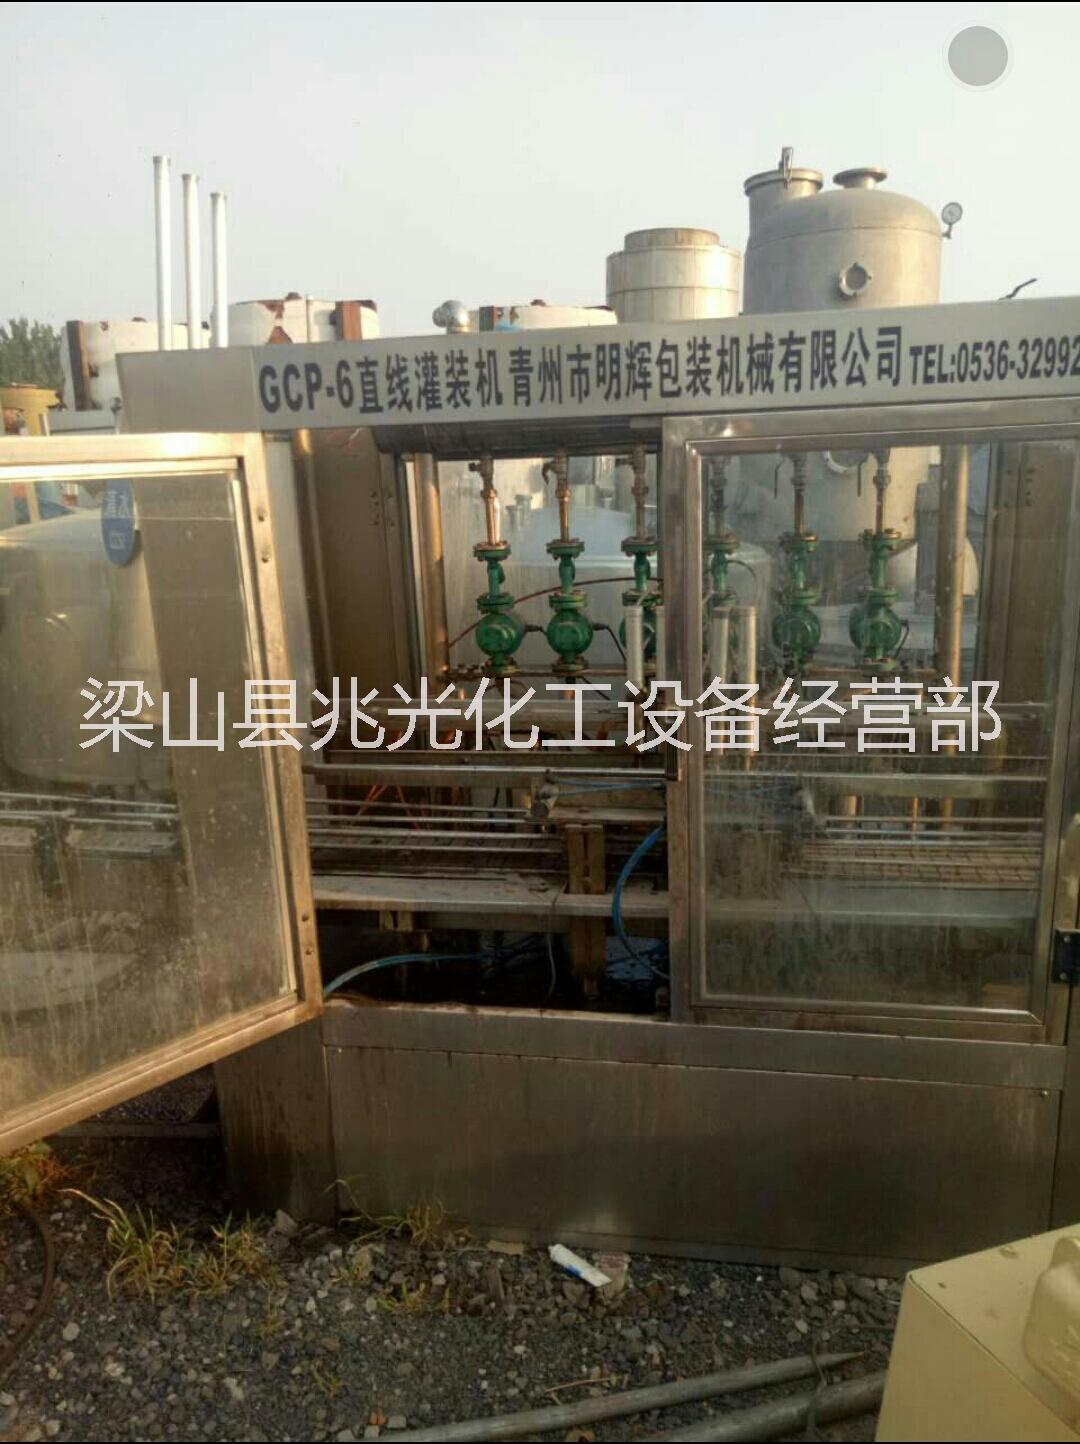 二手碳酸饮料厂设备矿泉水灌装机厂家